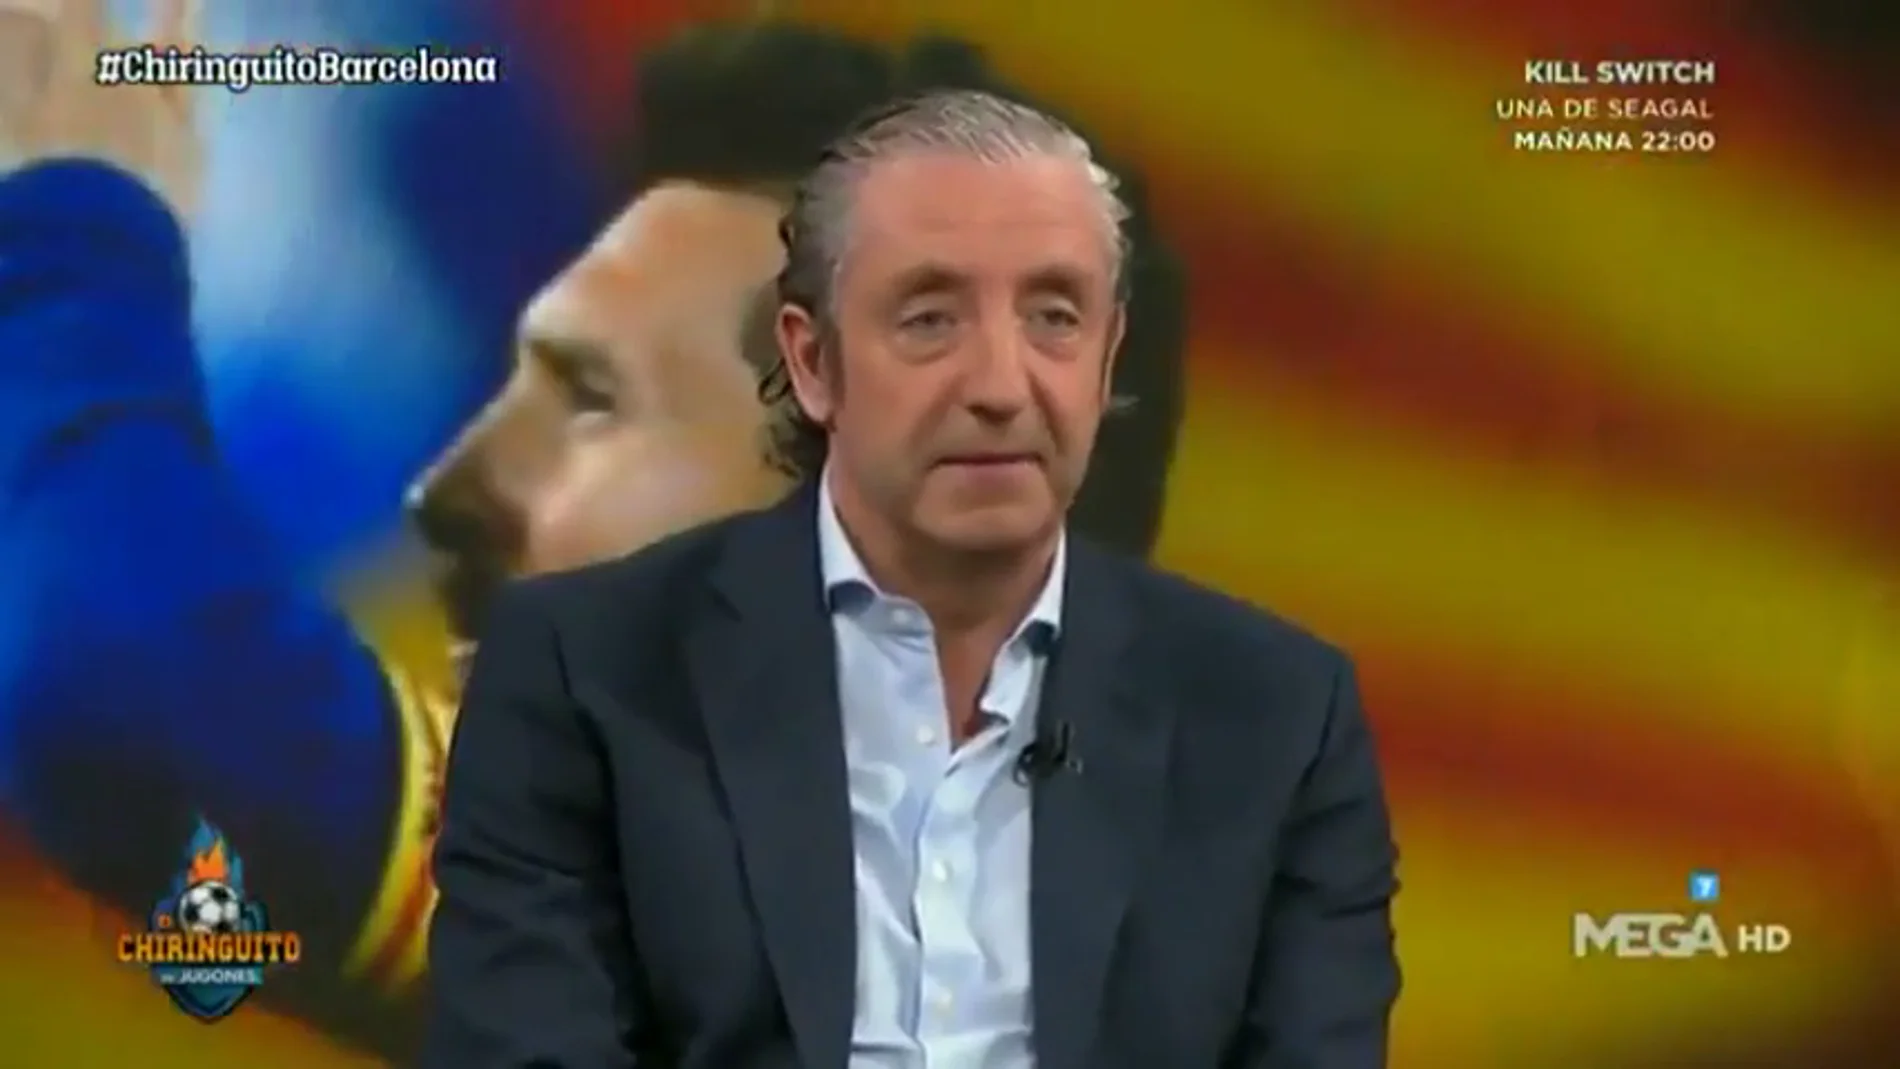 La reacción viral de Josep Pedrerol cuando independentistas le insultan en el Camp Nou: "Me han llamado p***"